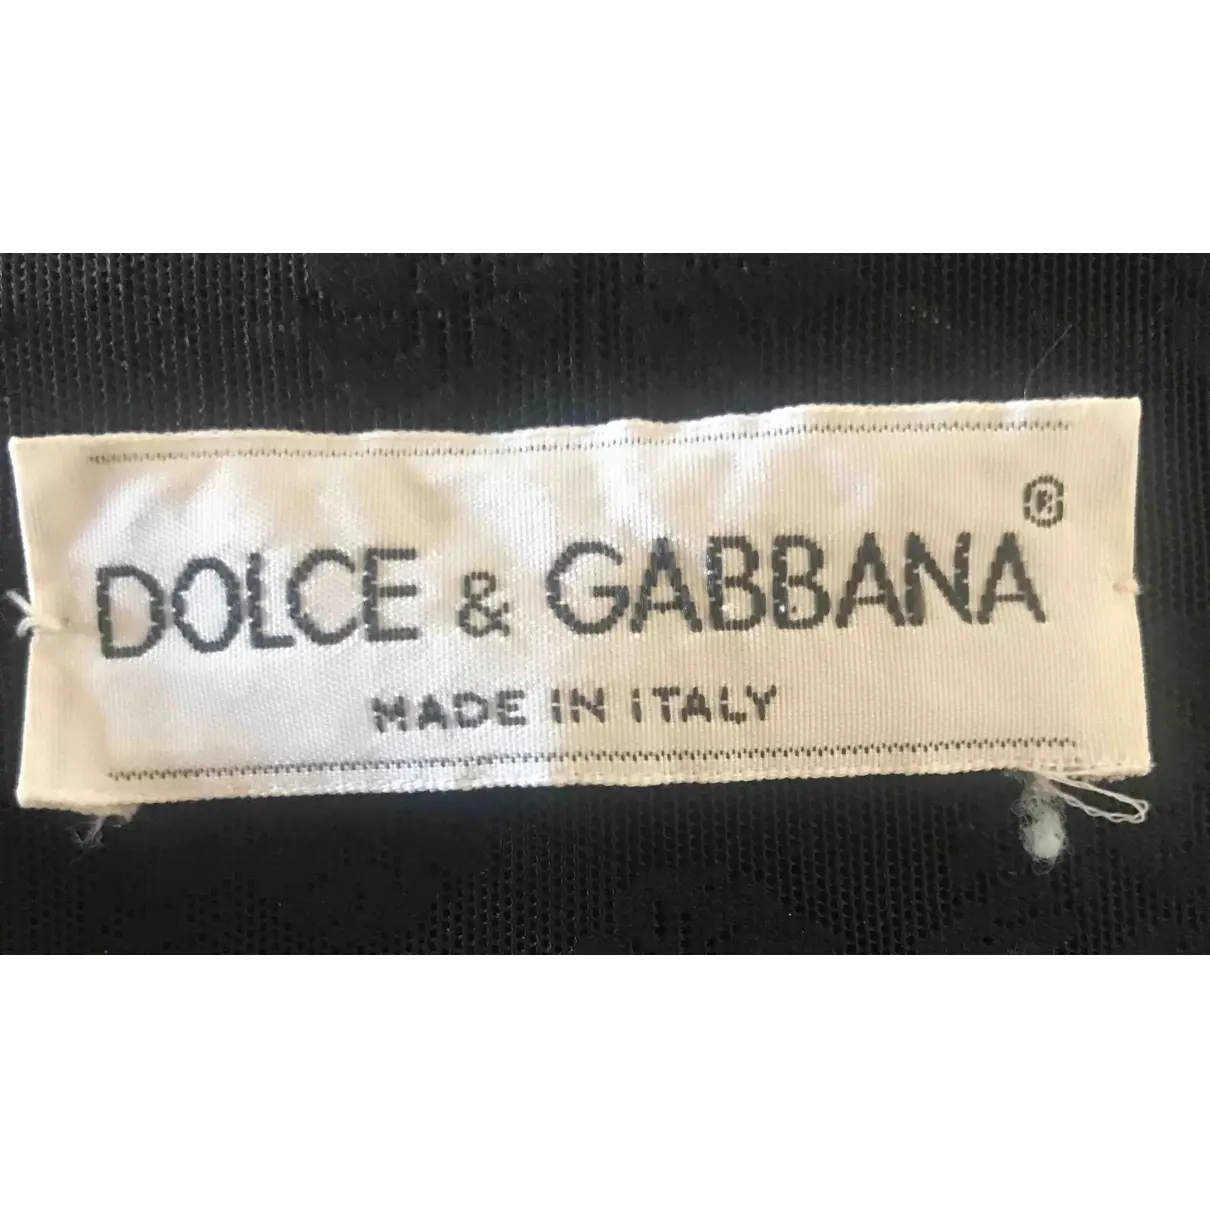 Buy Dolce & Gabbana Jacket online - Vintage